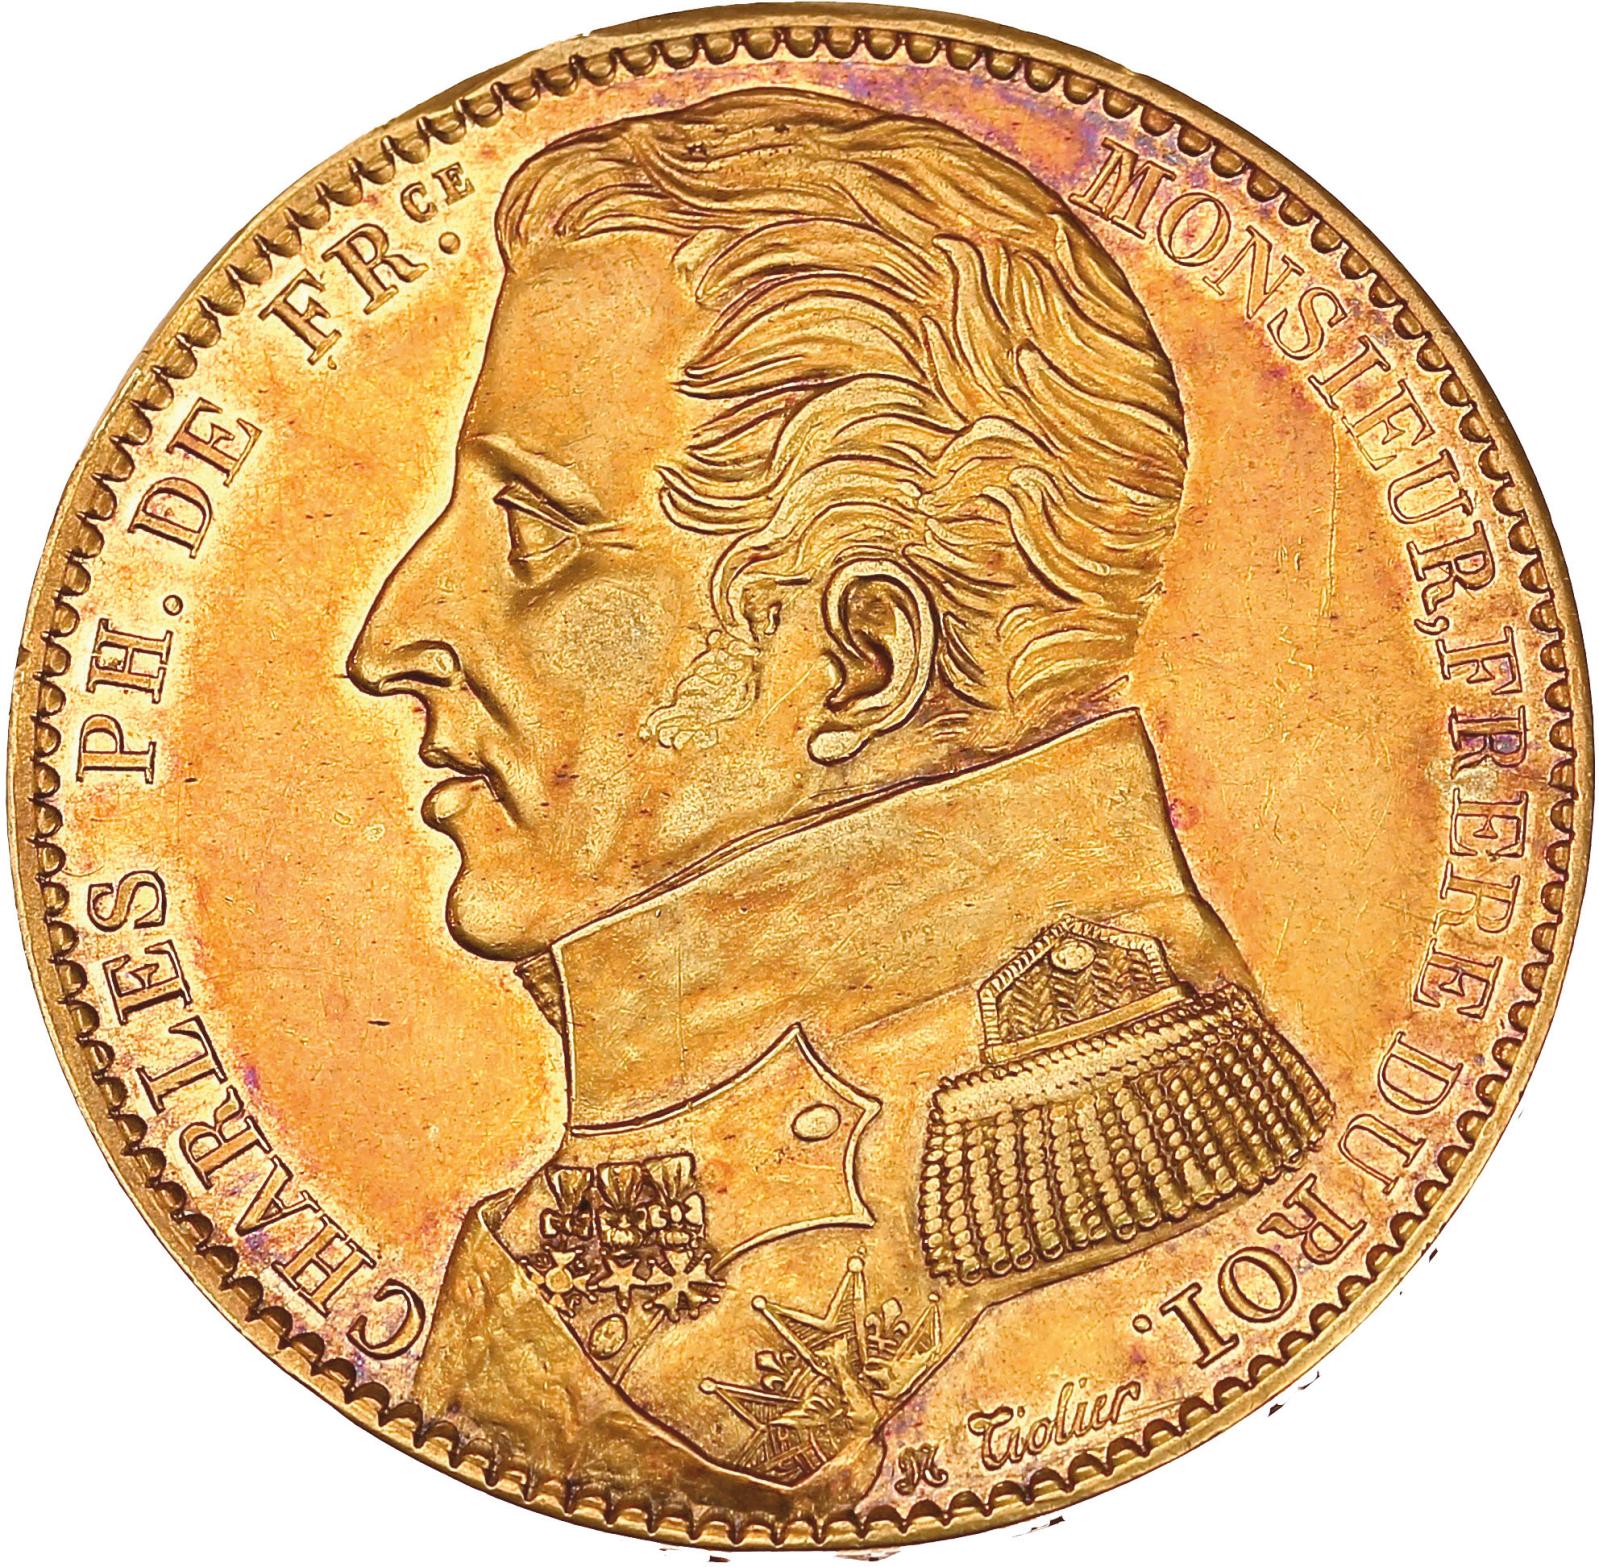 Charles de France sur une monnaie d'or